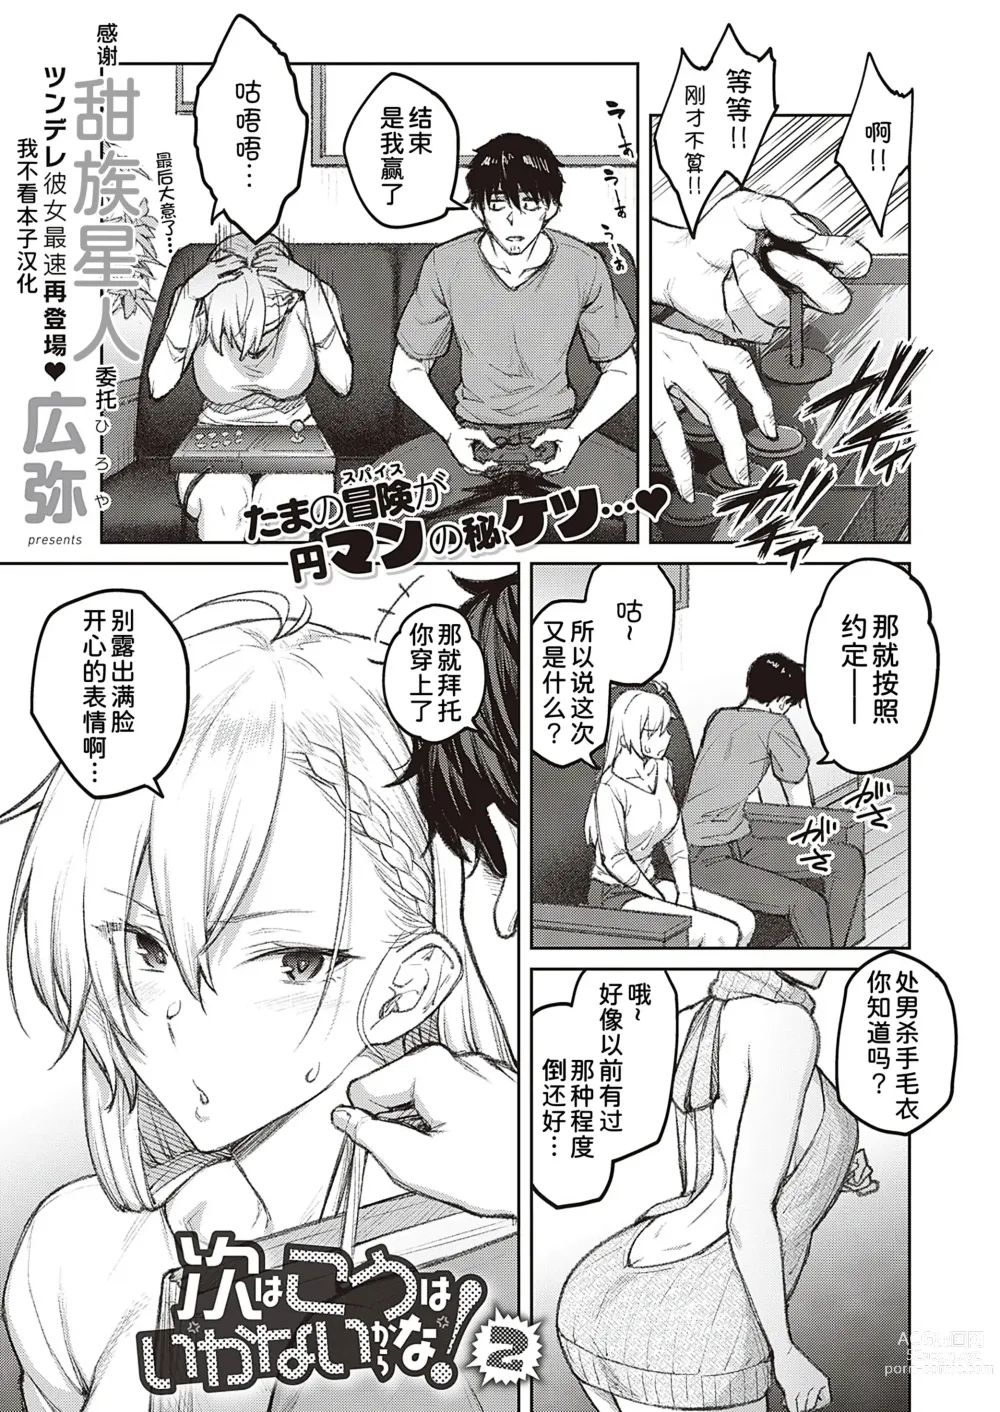 Page 1 of manga Tsugi wa Kou wa Ikanai kara na!2